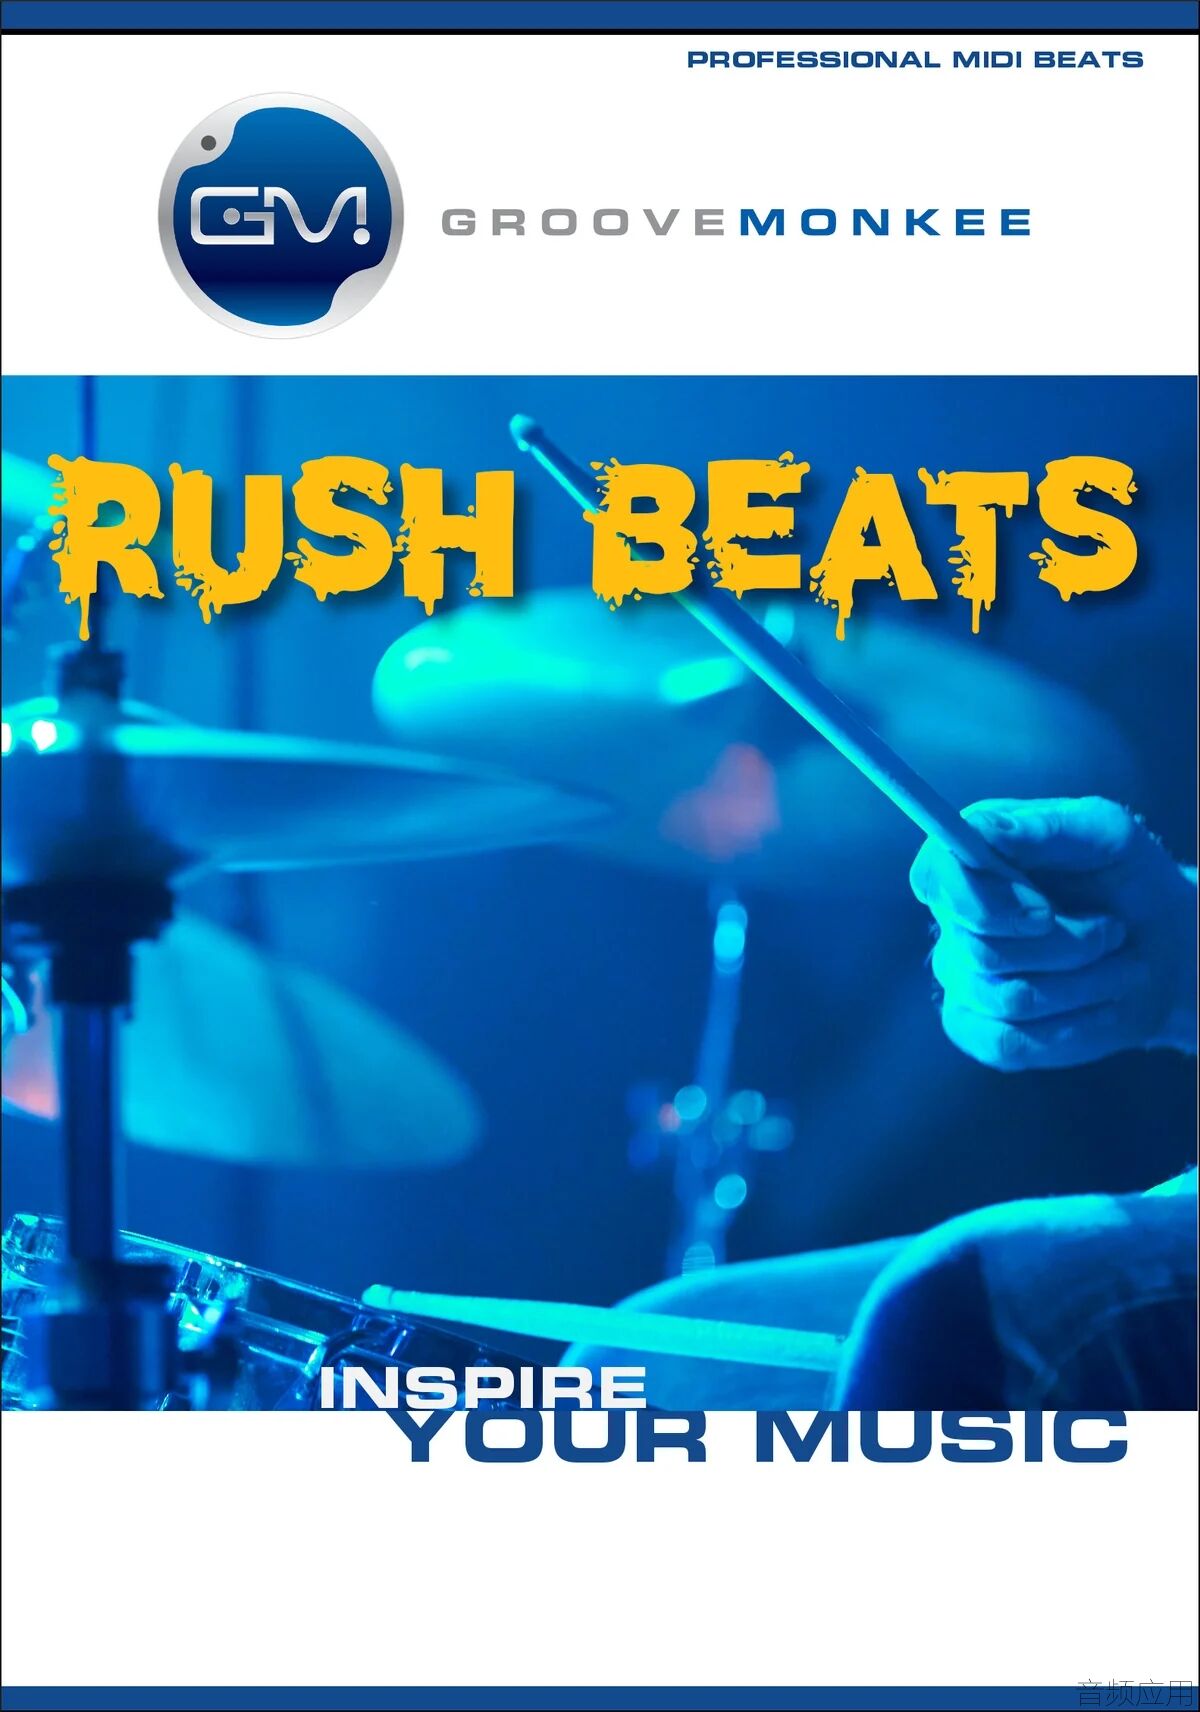 rush_beats_1579x2254_e2dee6e5-23e3-4f1c-be9b-6affd952a97f.webp.jpg